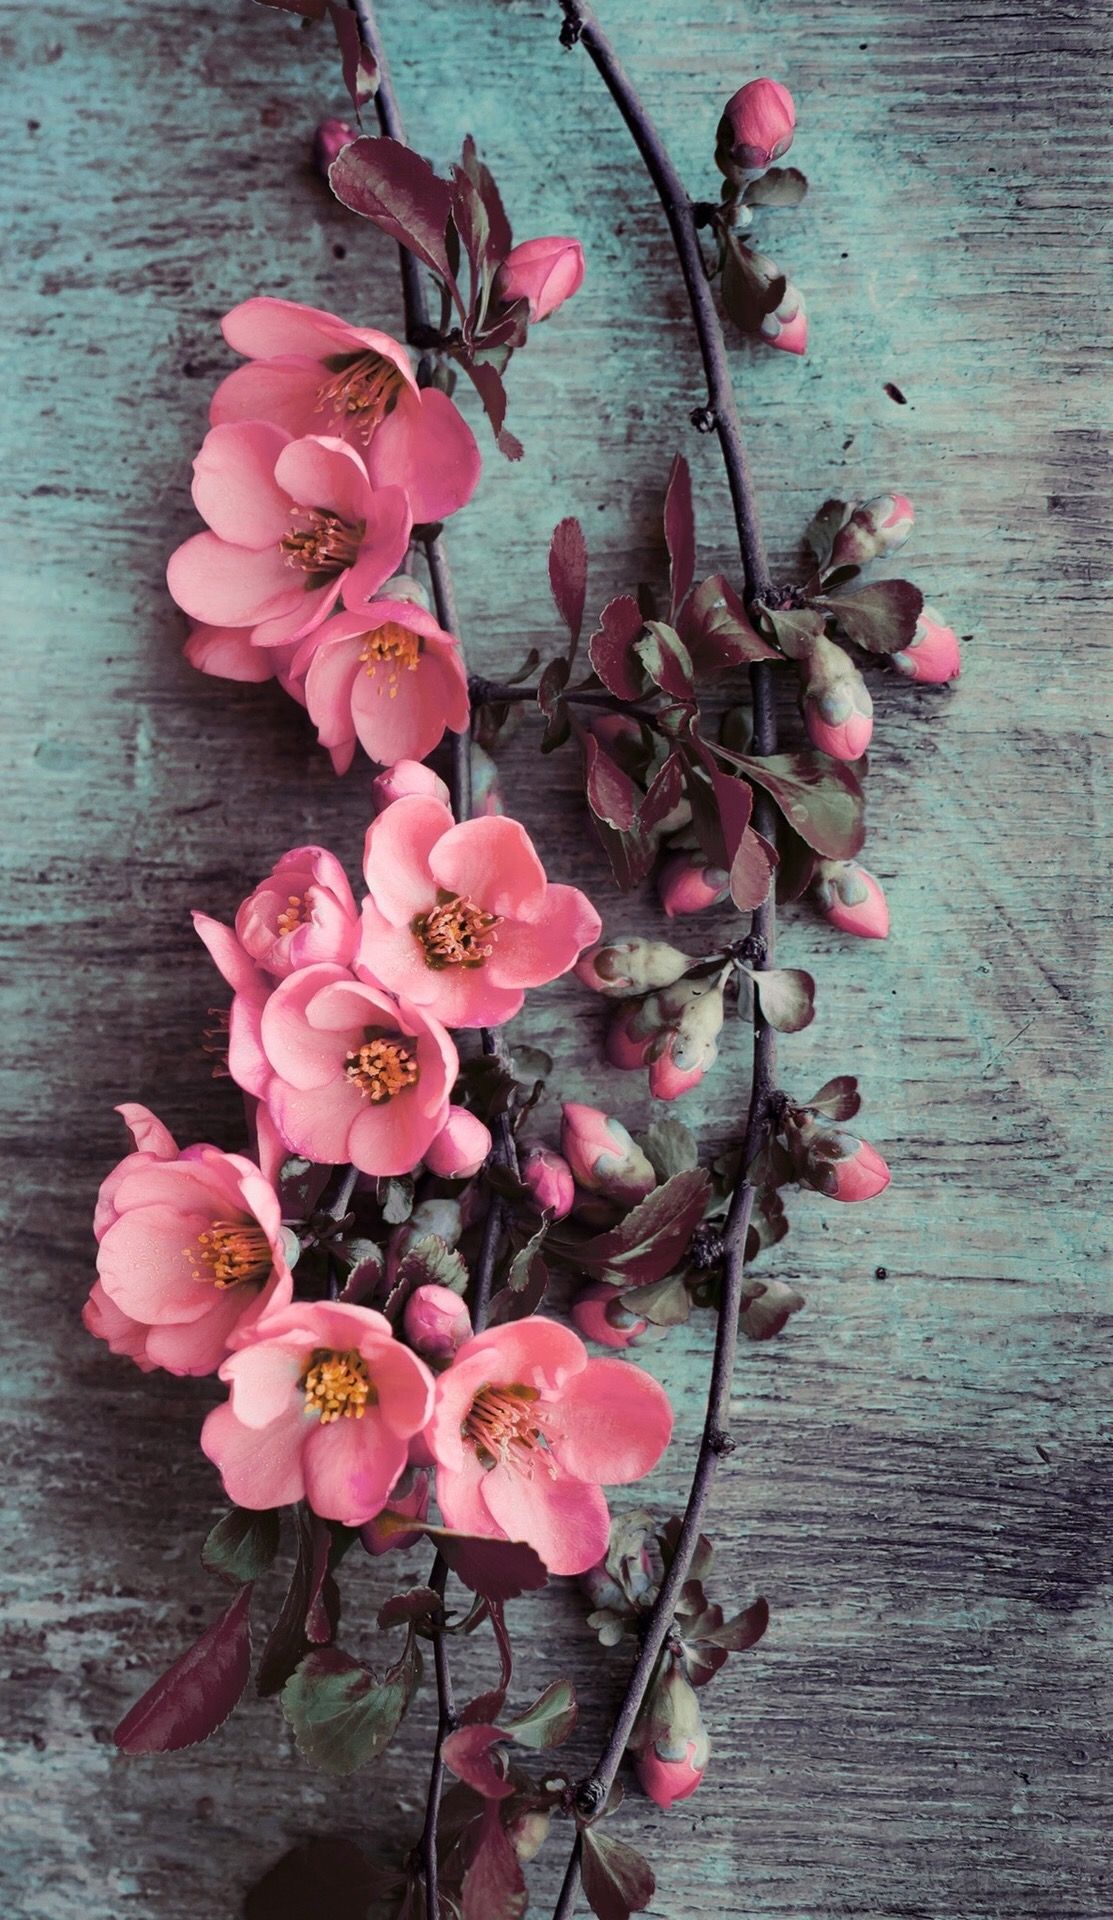 Wallpaper iPhone/beauty/pink flowers ⚪ | Art | Pinterest ...